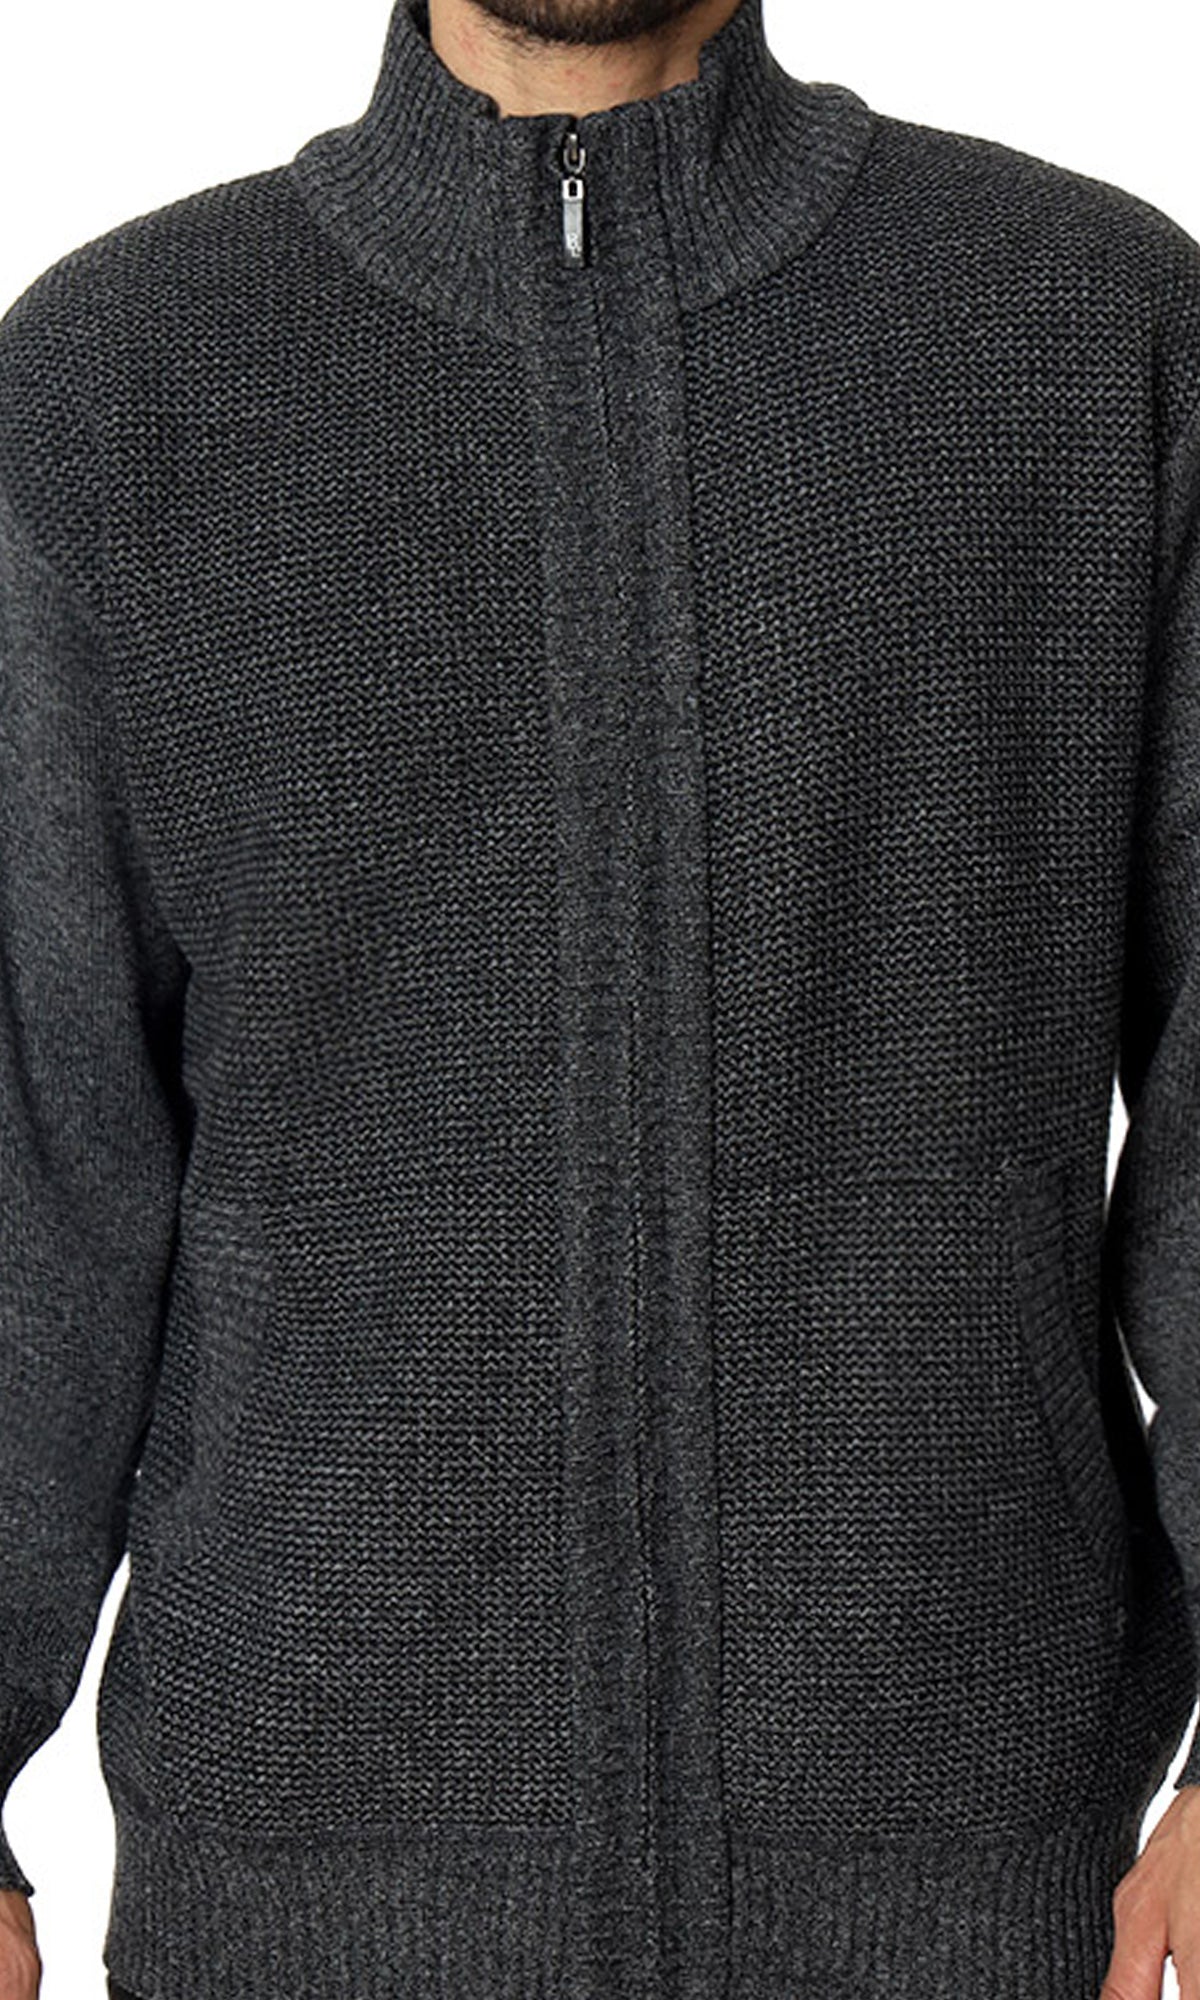 Suéter abierto con forro afelpado. MOD. BMF-016